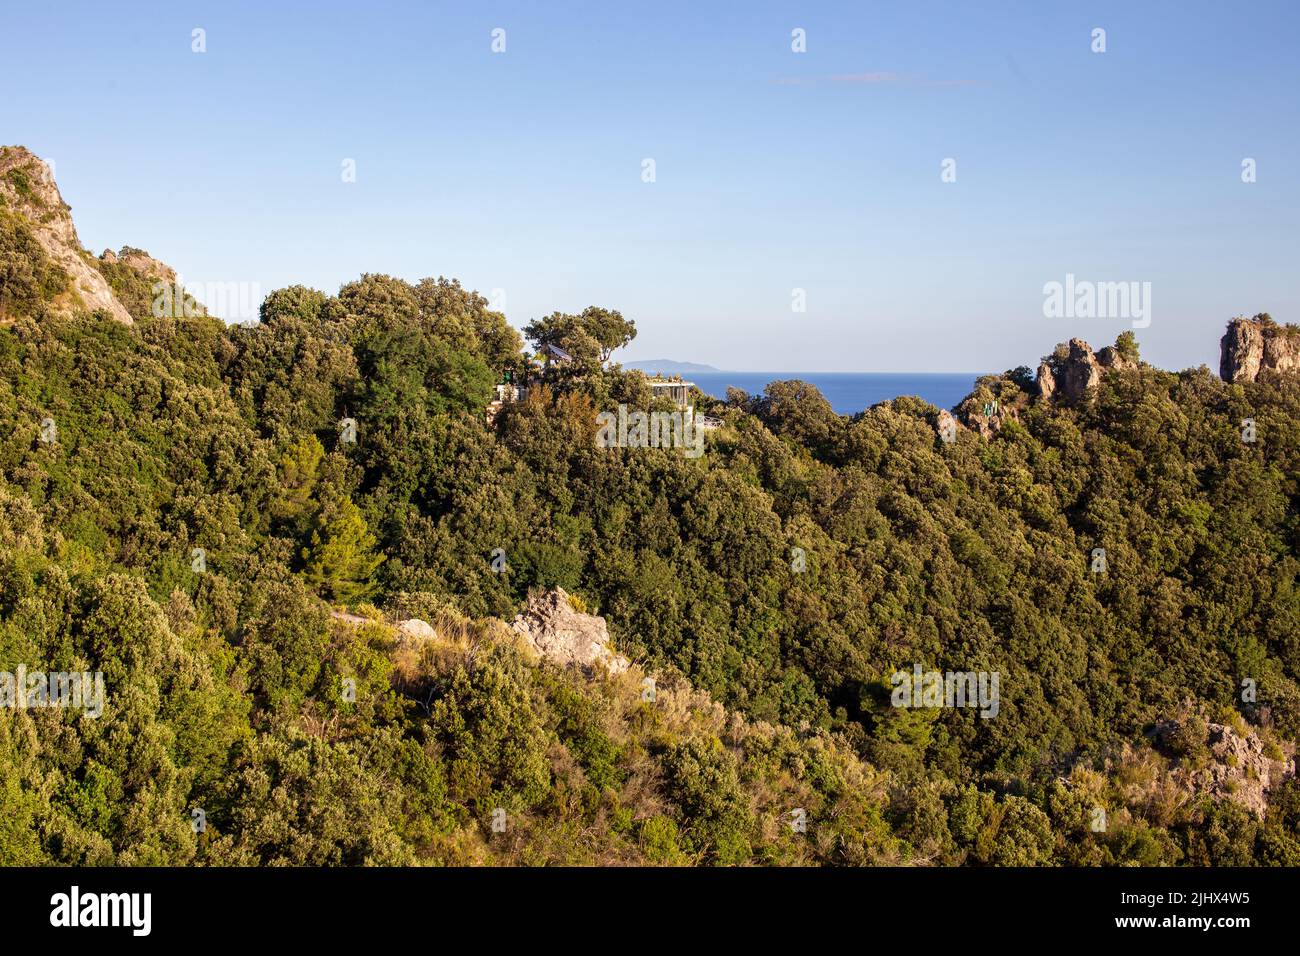 Villa de lujo escondida en la costa de Amalfi en un paisaje mediterráneo con árboles y rocas Foto de stock